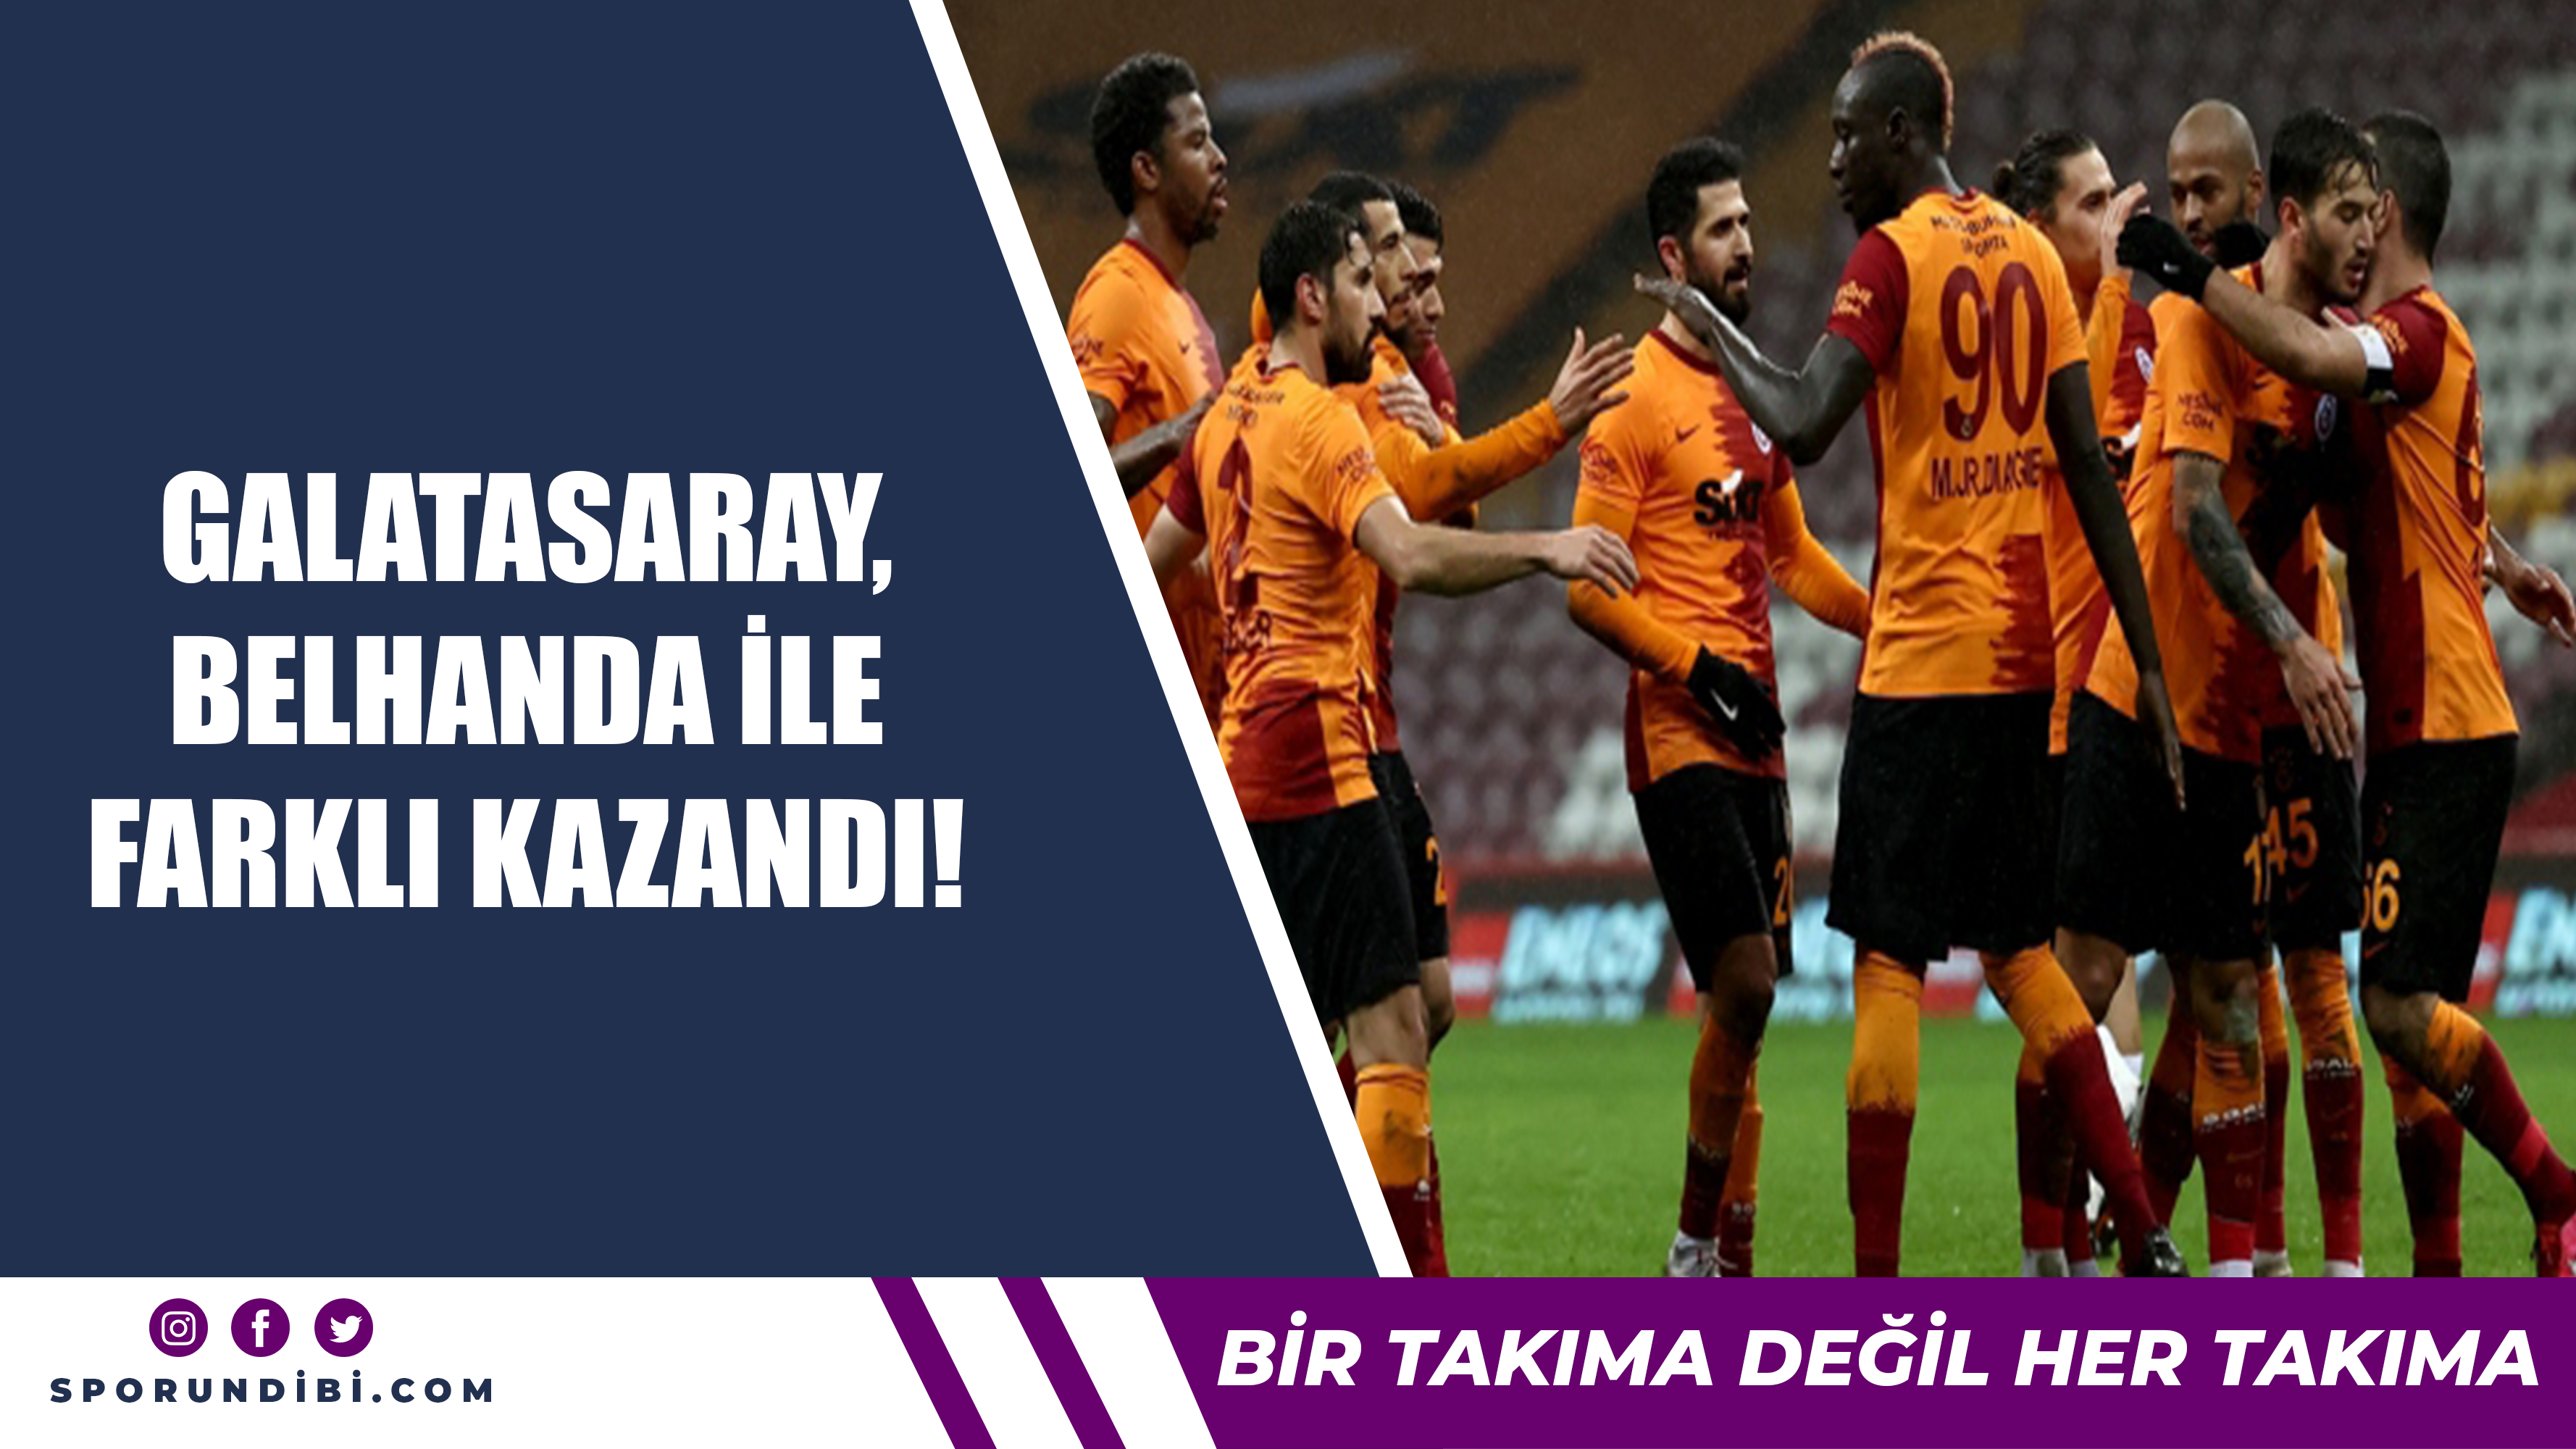 Galatasaray, Belhanda ile farklı kazandı!